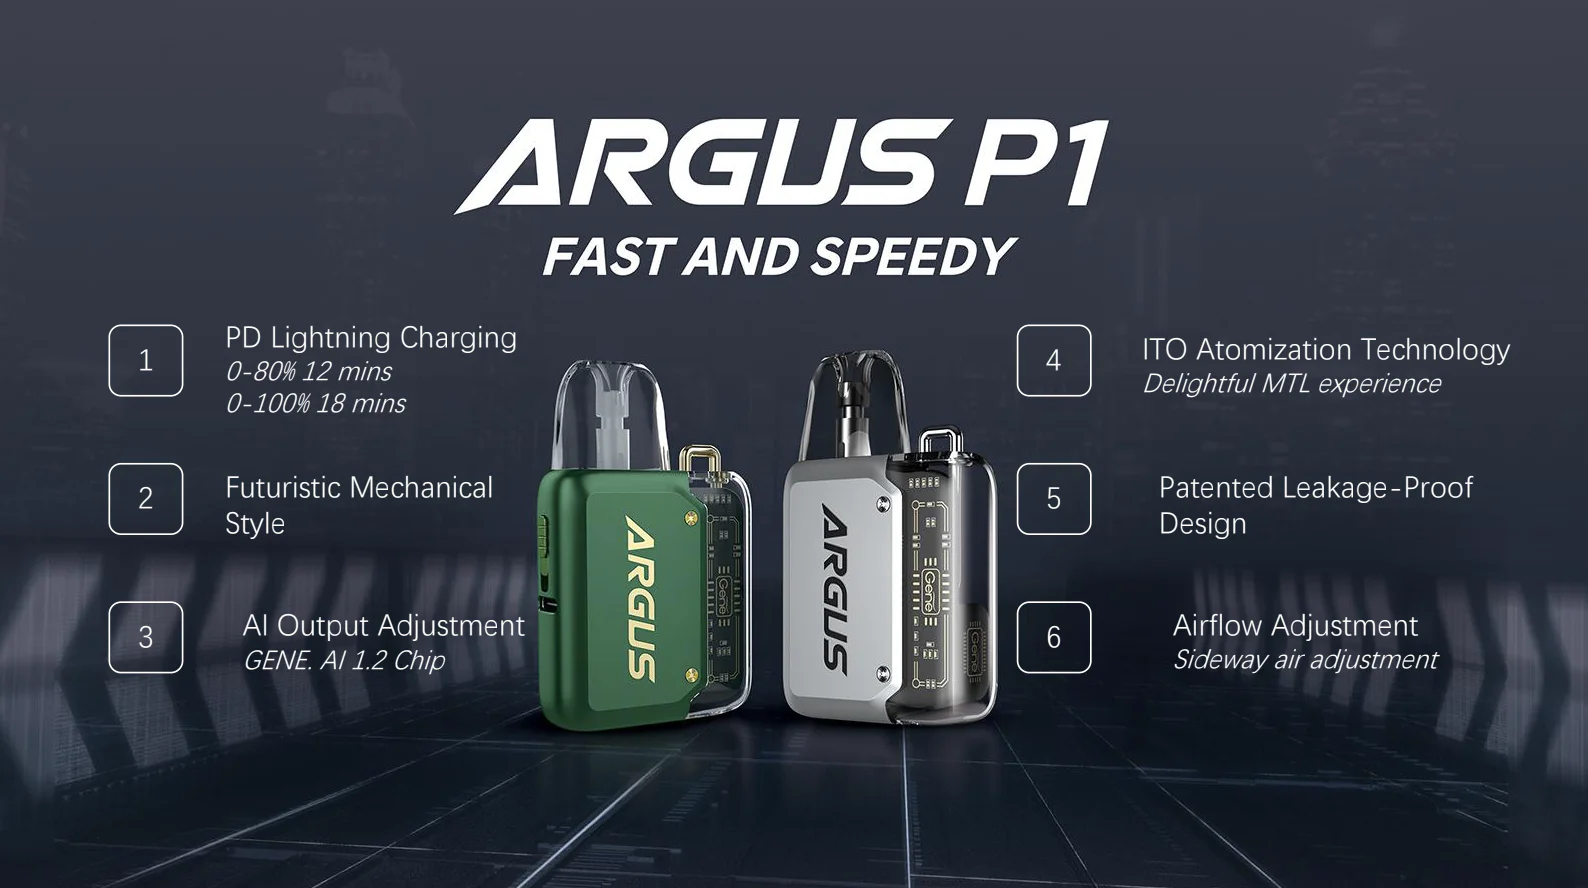 Argus P1 Features